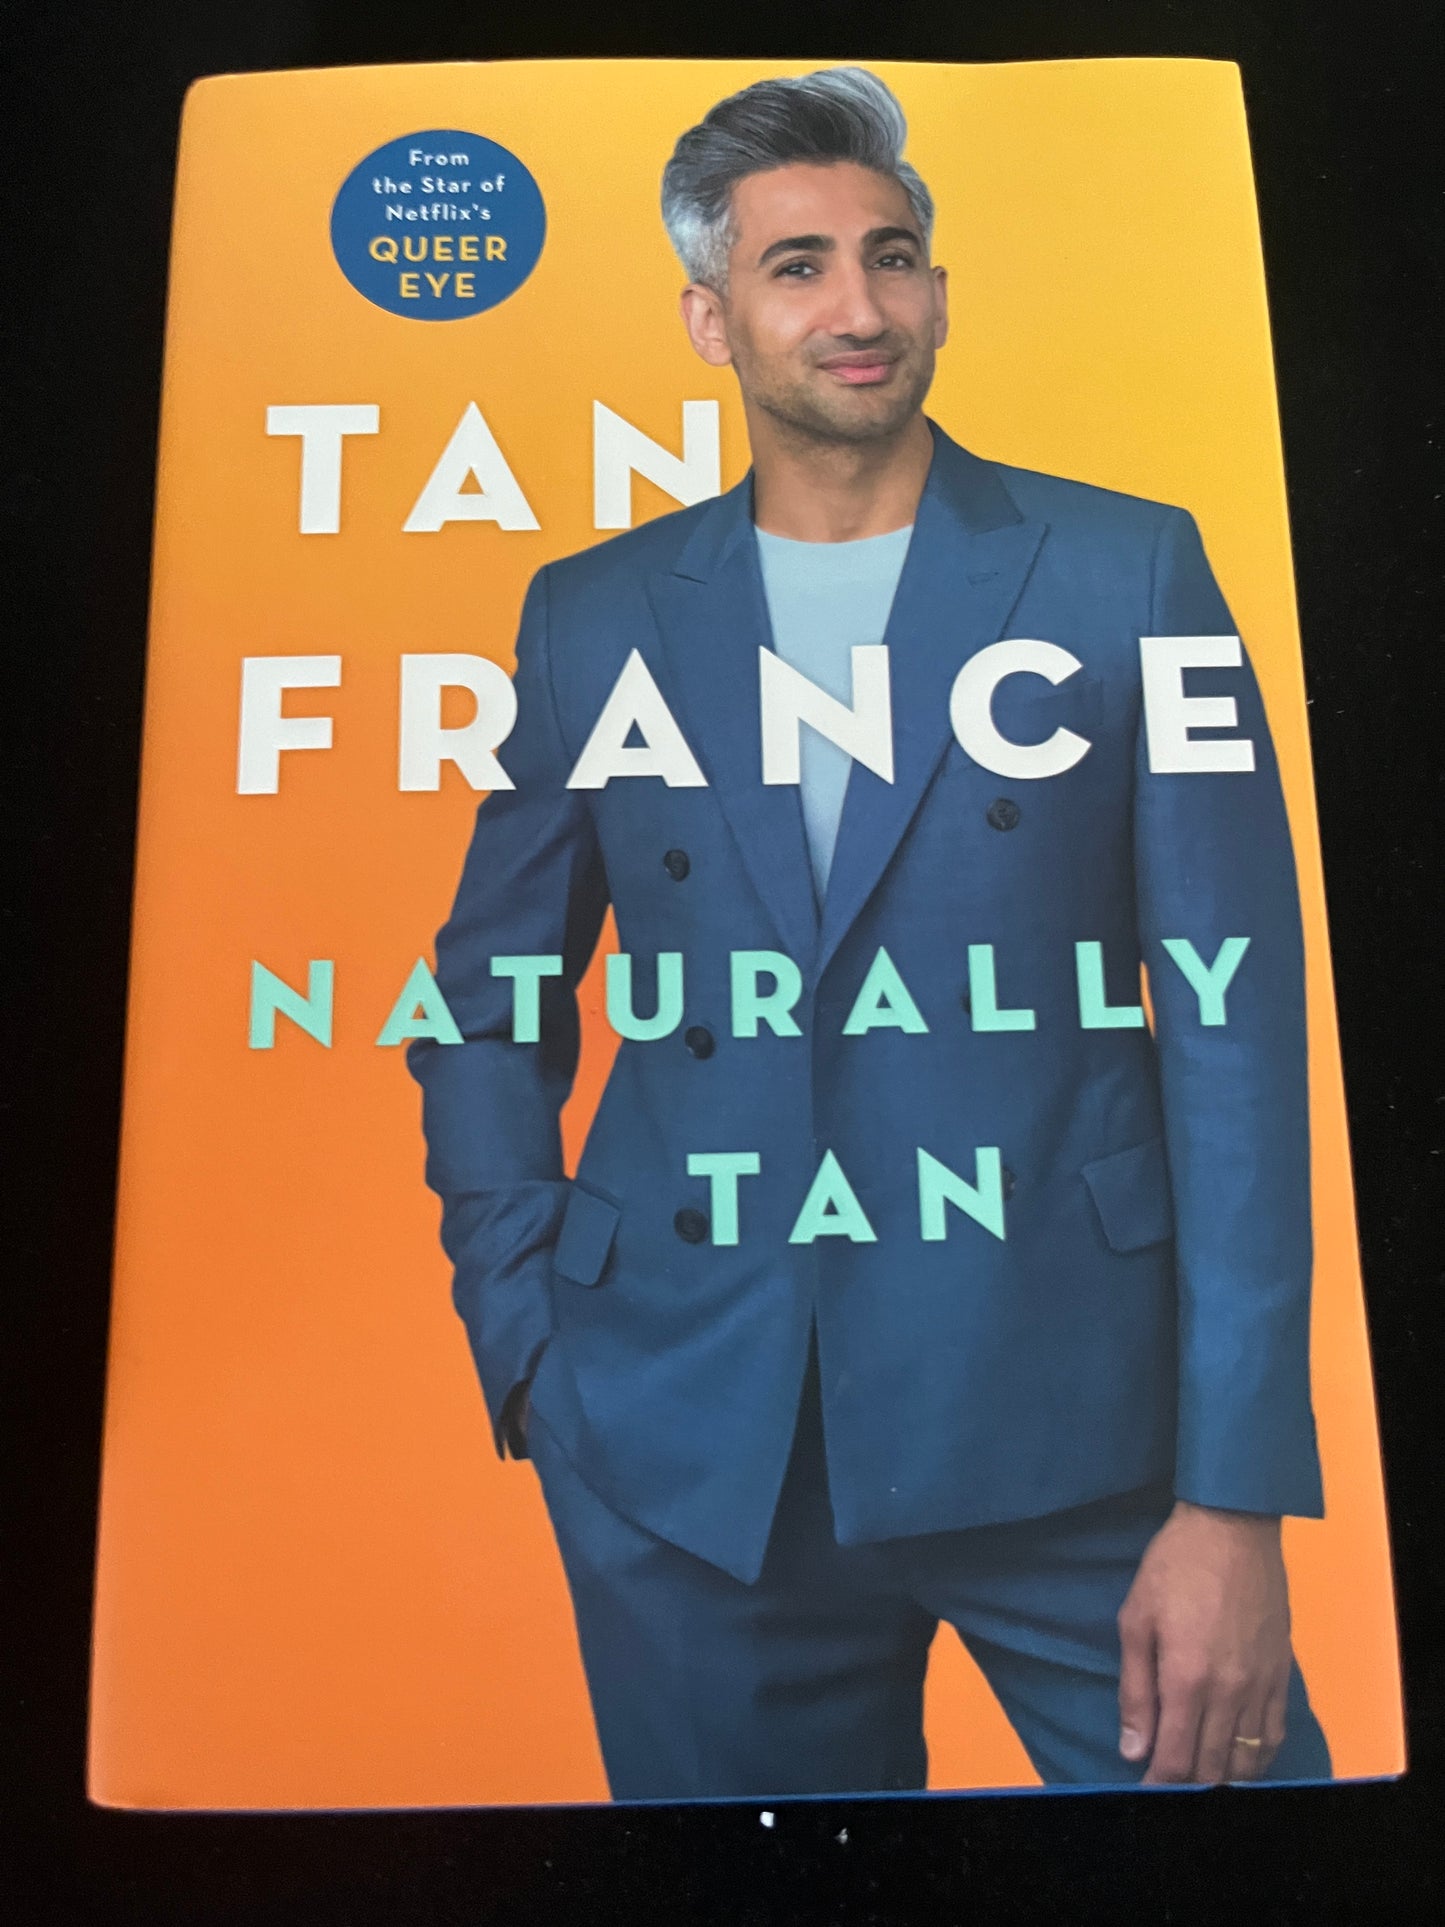 NATURALLY TAN by Tan France